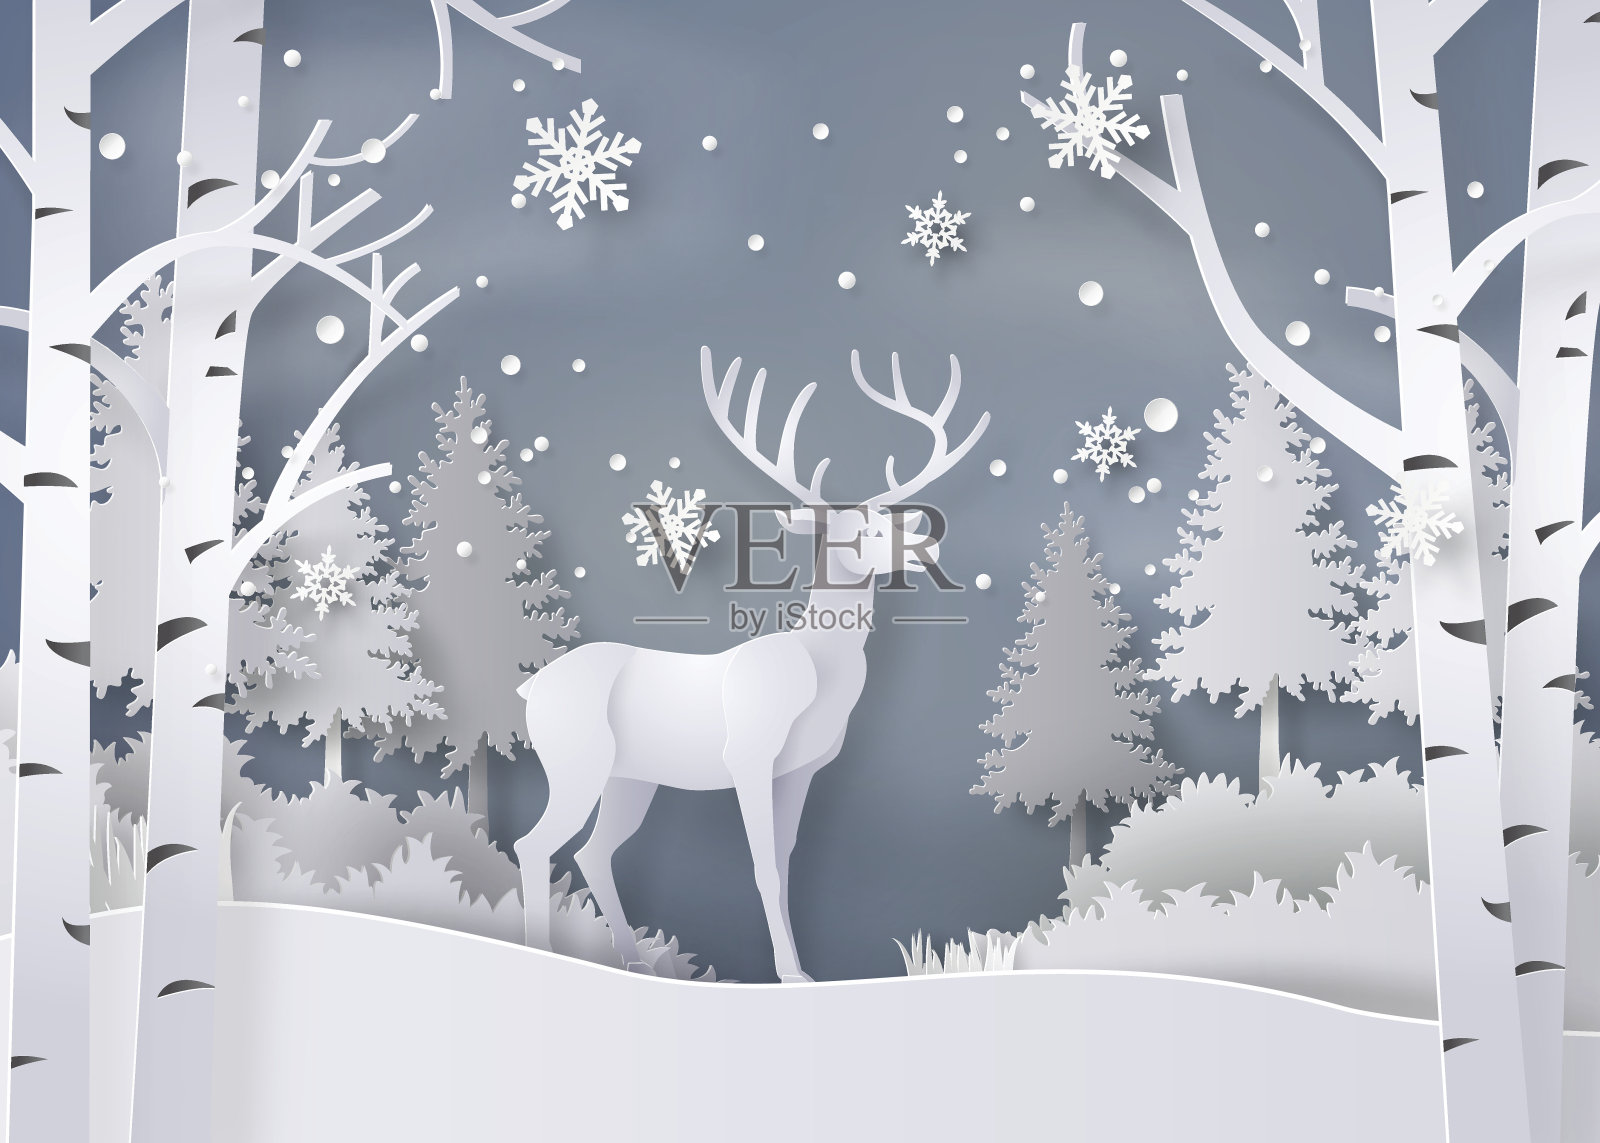 鹿在白雪覆盖的森林里。插画图片素材